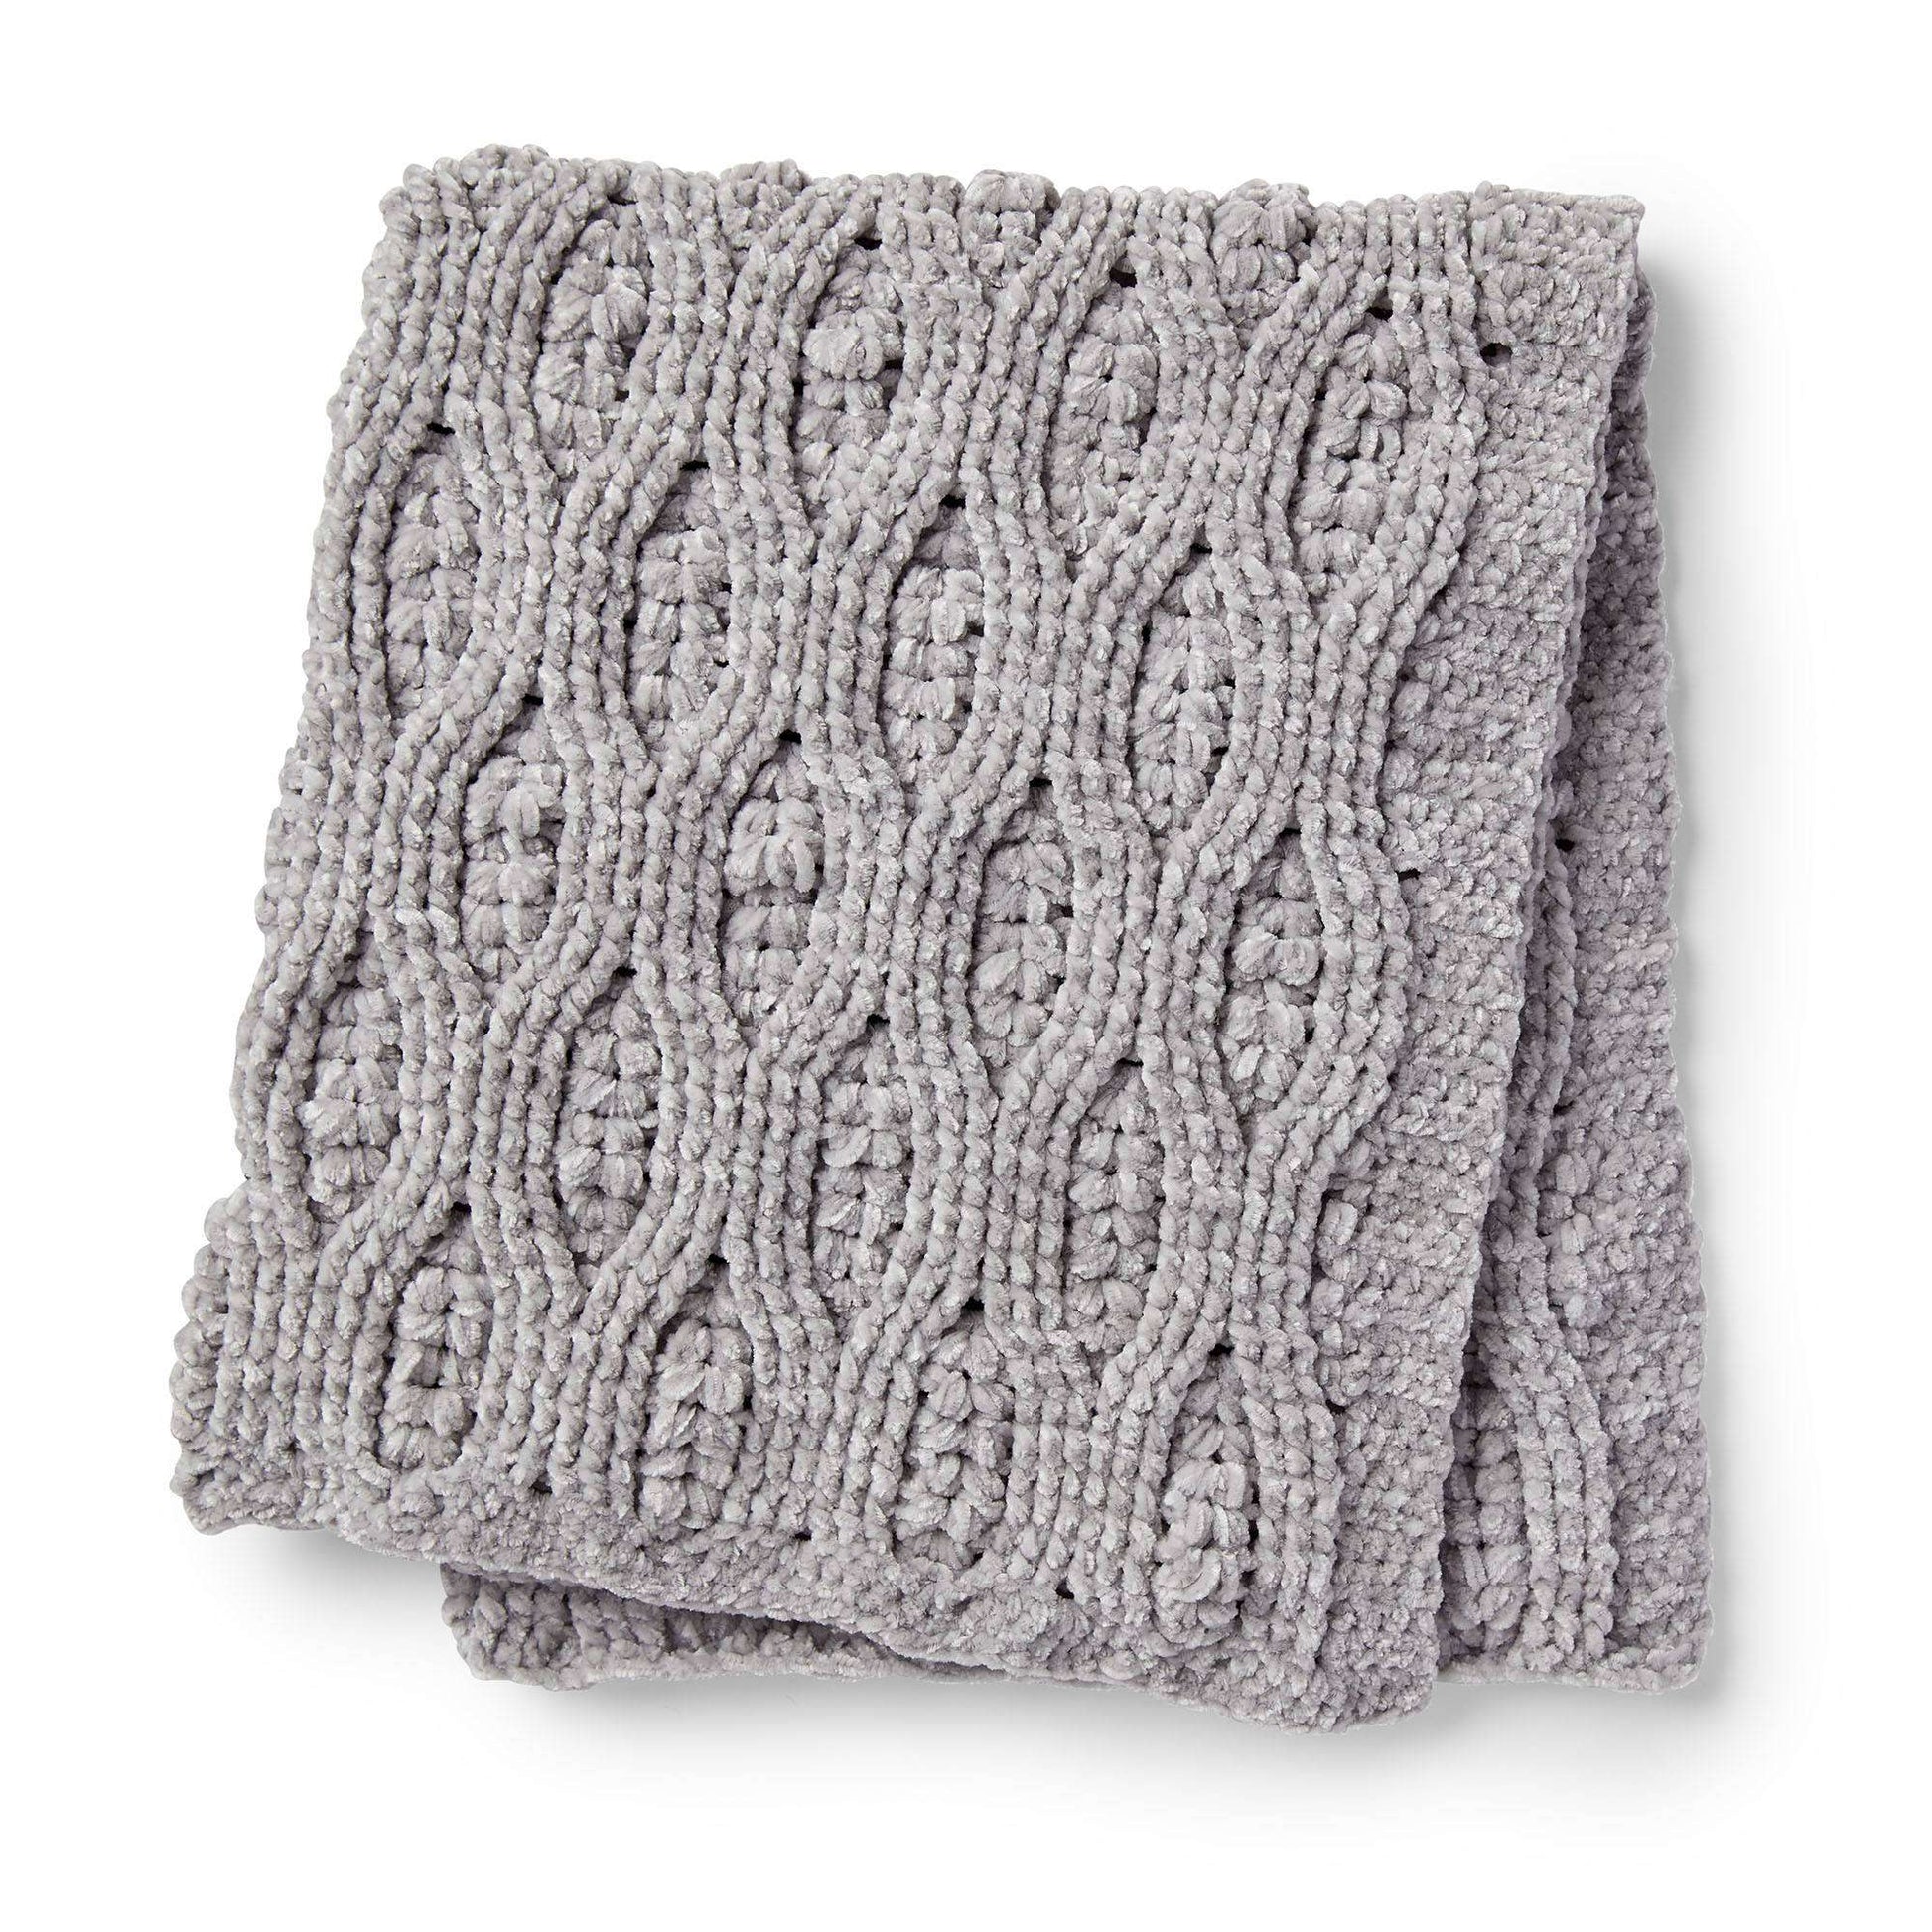 Free Bernat Misty Vines Crochet Blanket Pattern